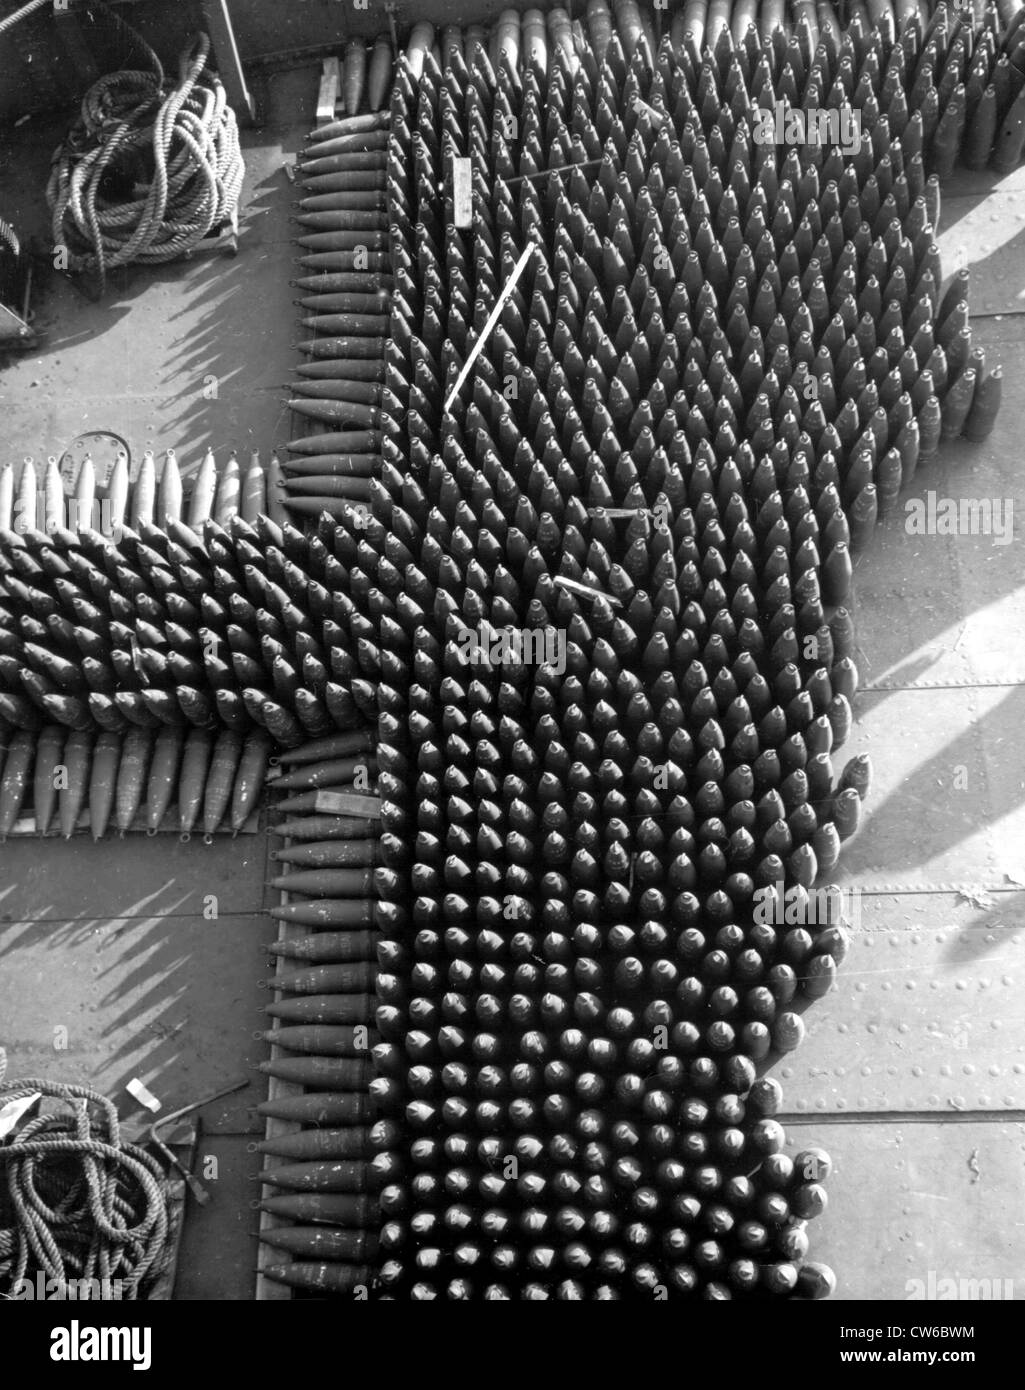 155 mm. Les réservoirs à bord d'un engin à Marseille(France) Janvier 1,1945 Banque D'Images